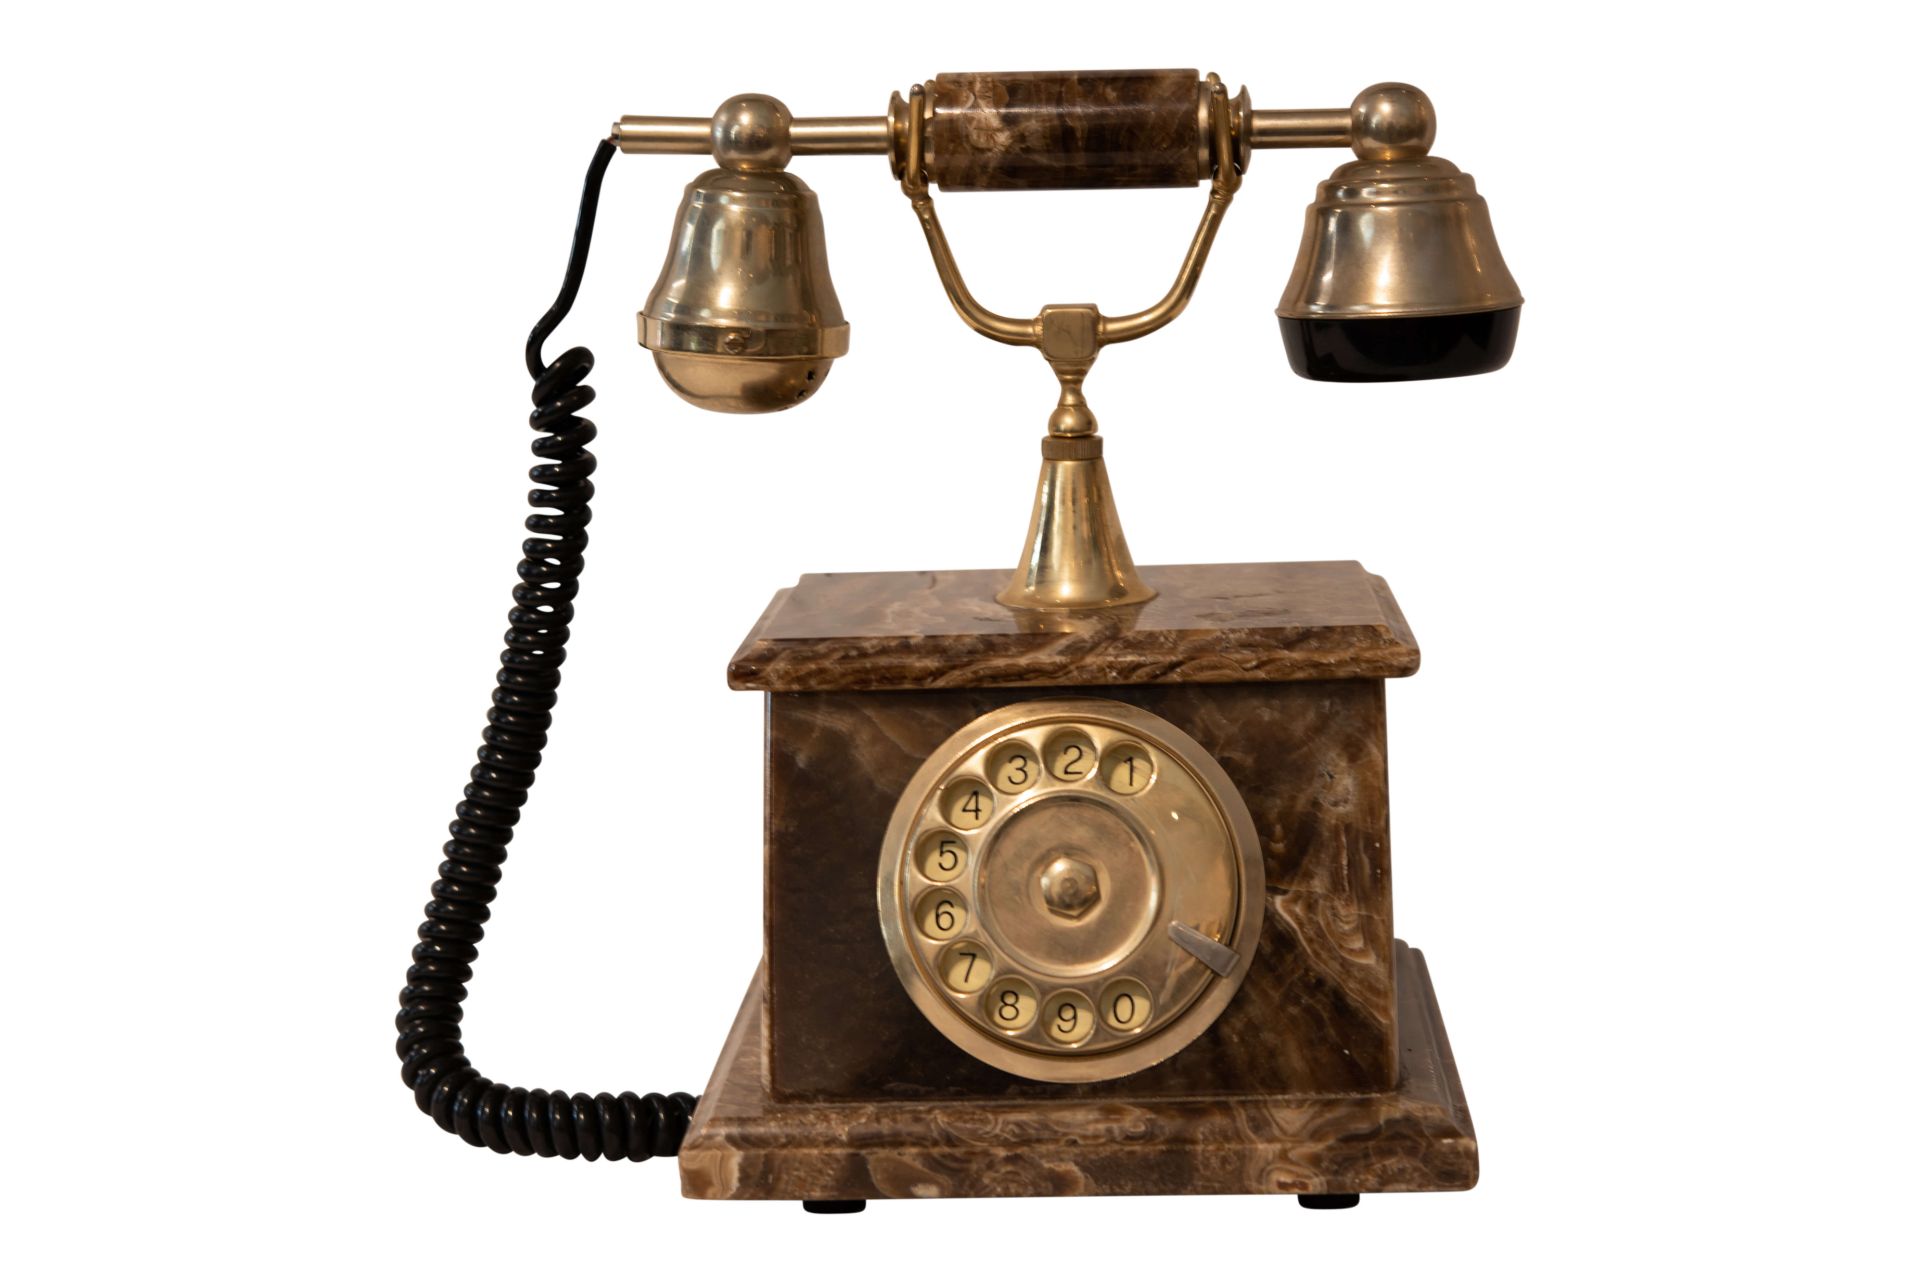 Nostalgie Telefon | Nostalgia Phone - Image 4 of 5